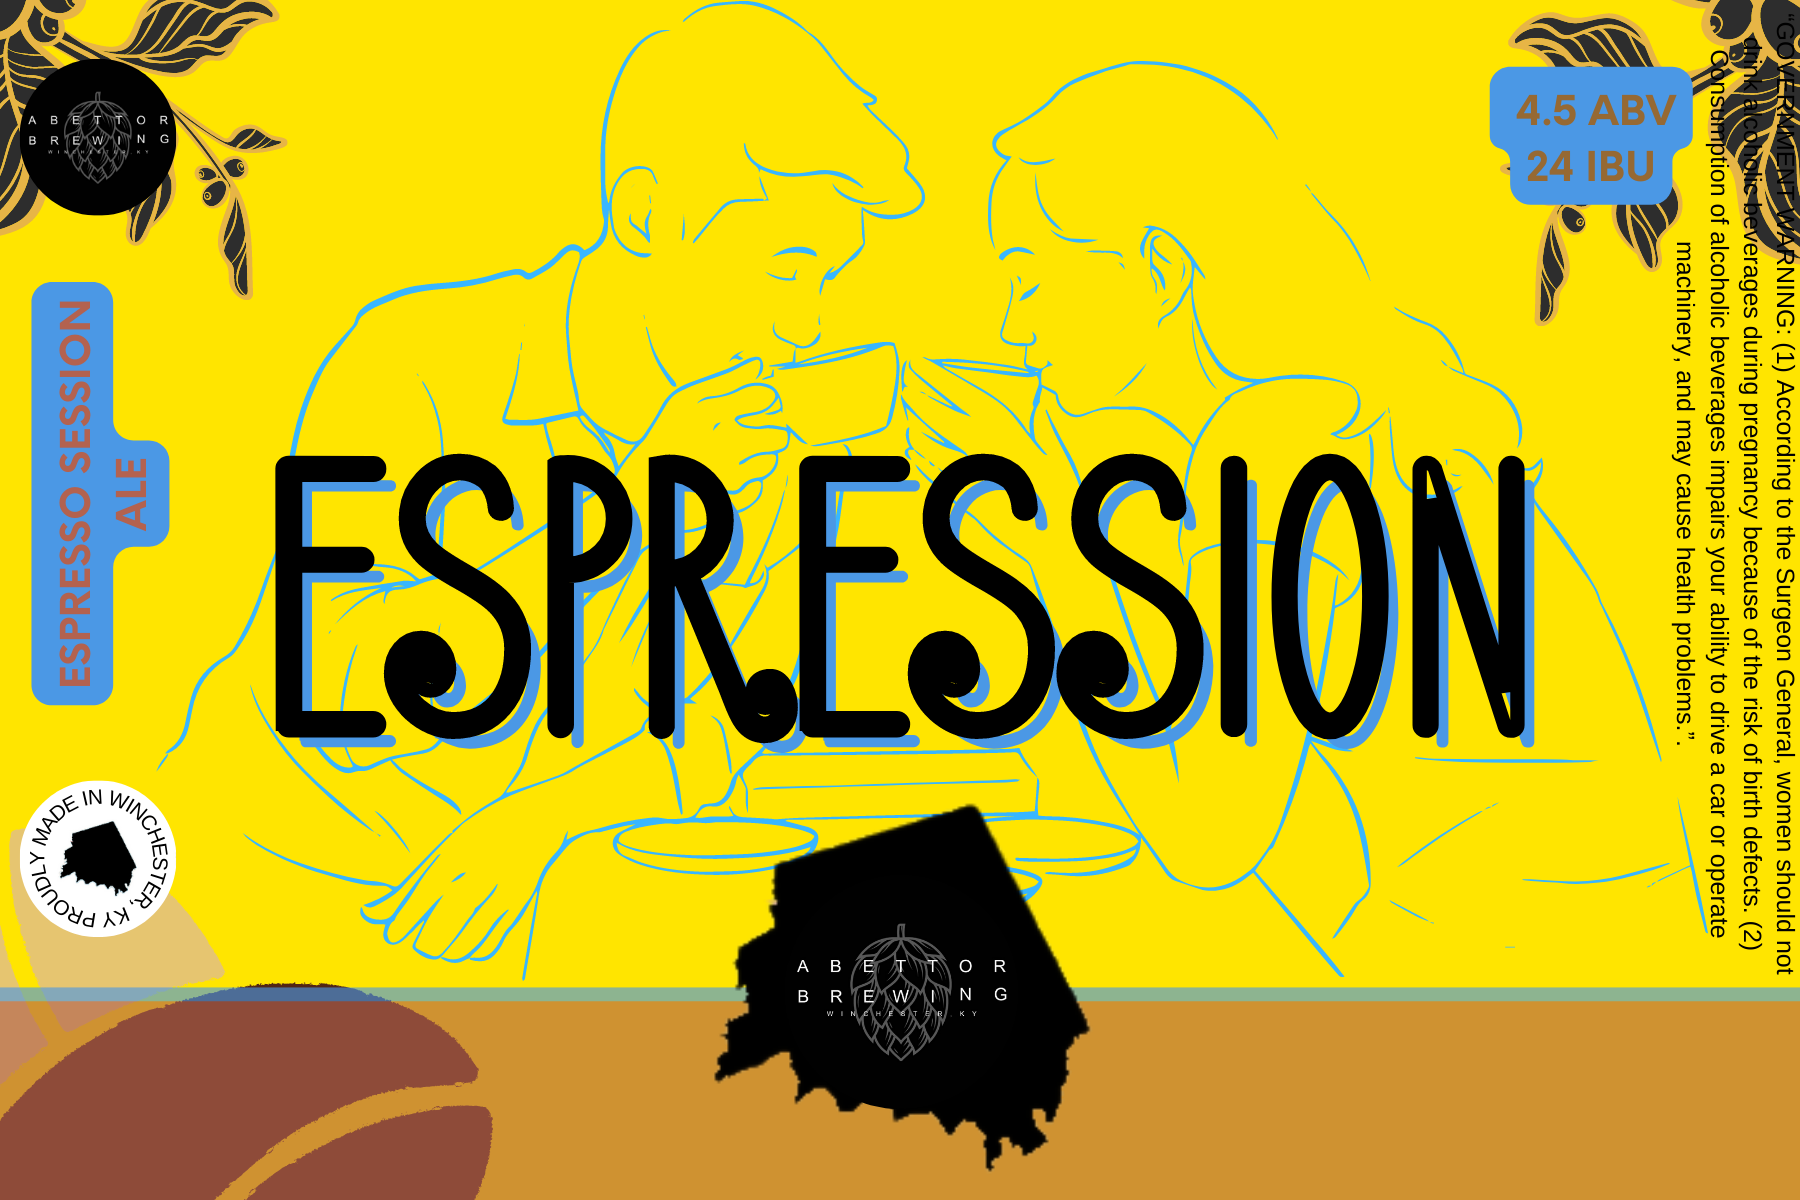 Espression- Espresso Session Ale